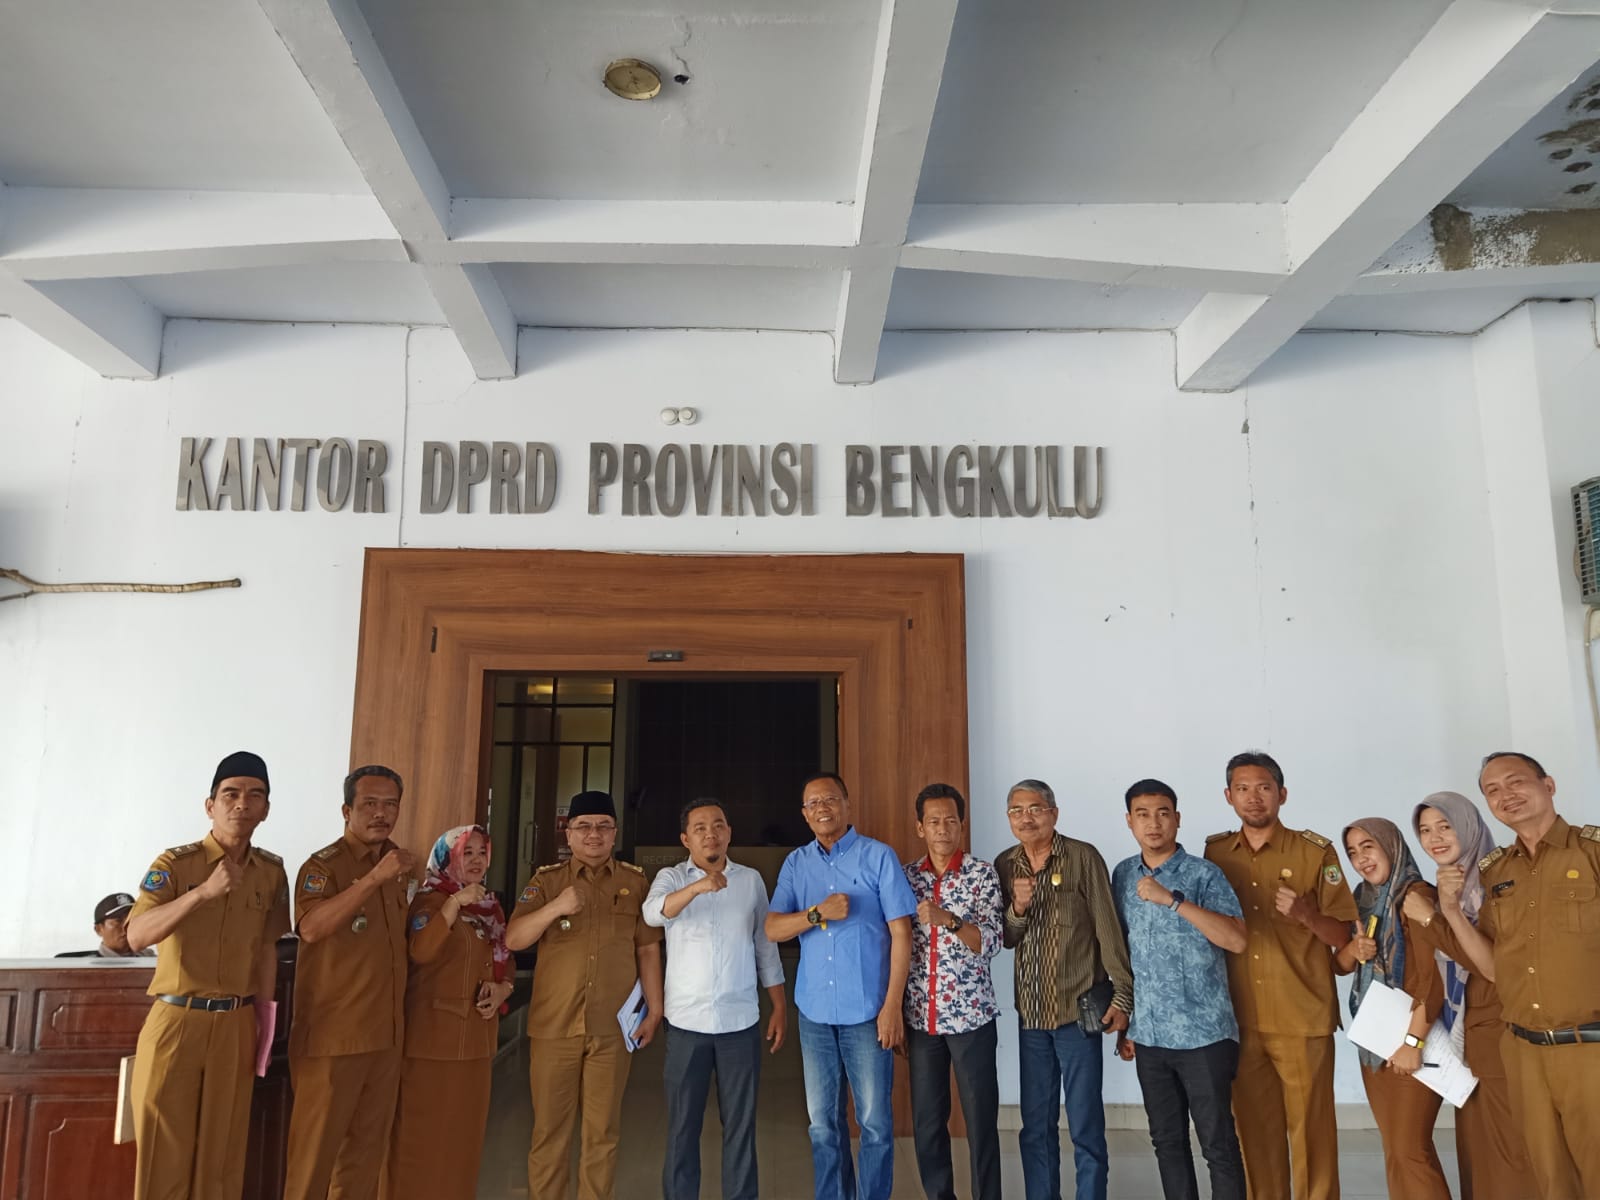  Ketua Komisi I DPRD Bengkulu Dempo Xler mendukung penuh program strategis Gubernur dan Wakil Gubernur Bengkulu yang tertuang di Rencana Pembangunan Jangka Menengah Daerah (RPJMD) khususnya di bidang informasi publik di ruang Komisi I DPRD Provinsi Bengkulu.